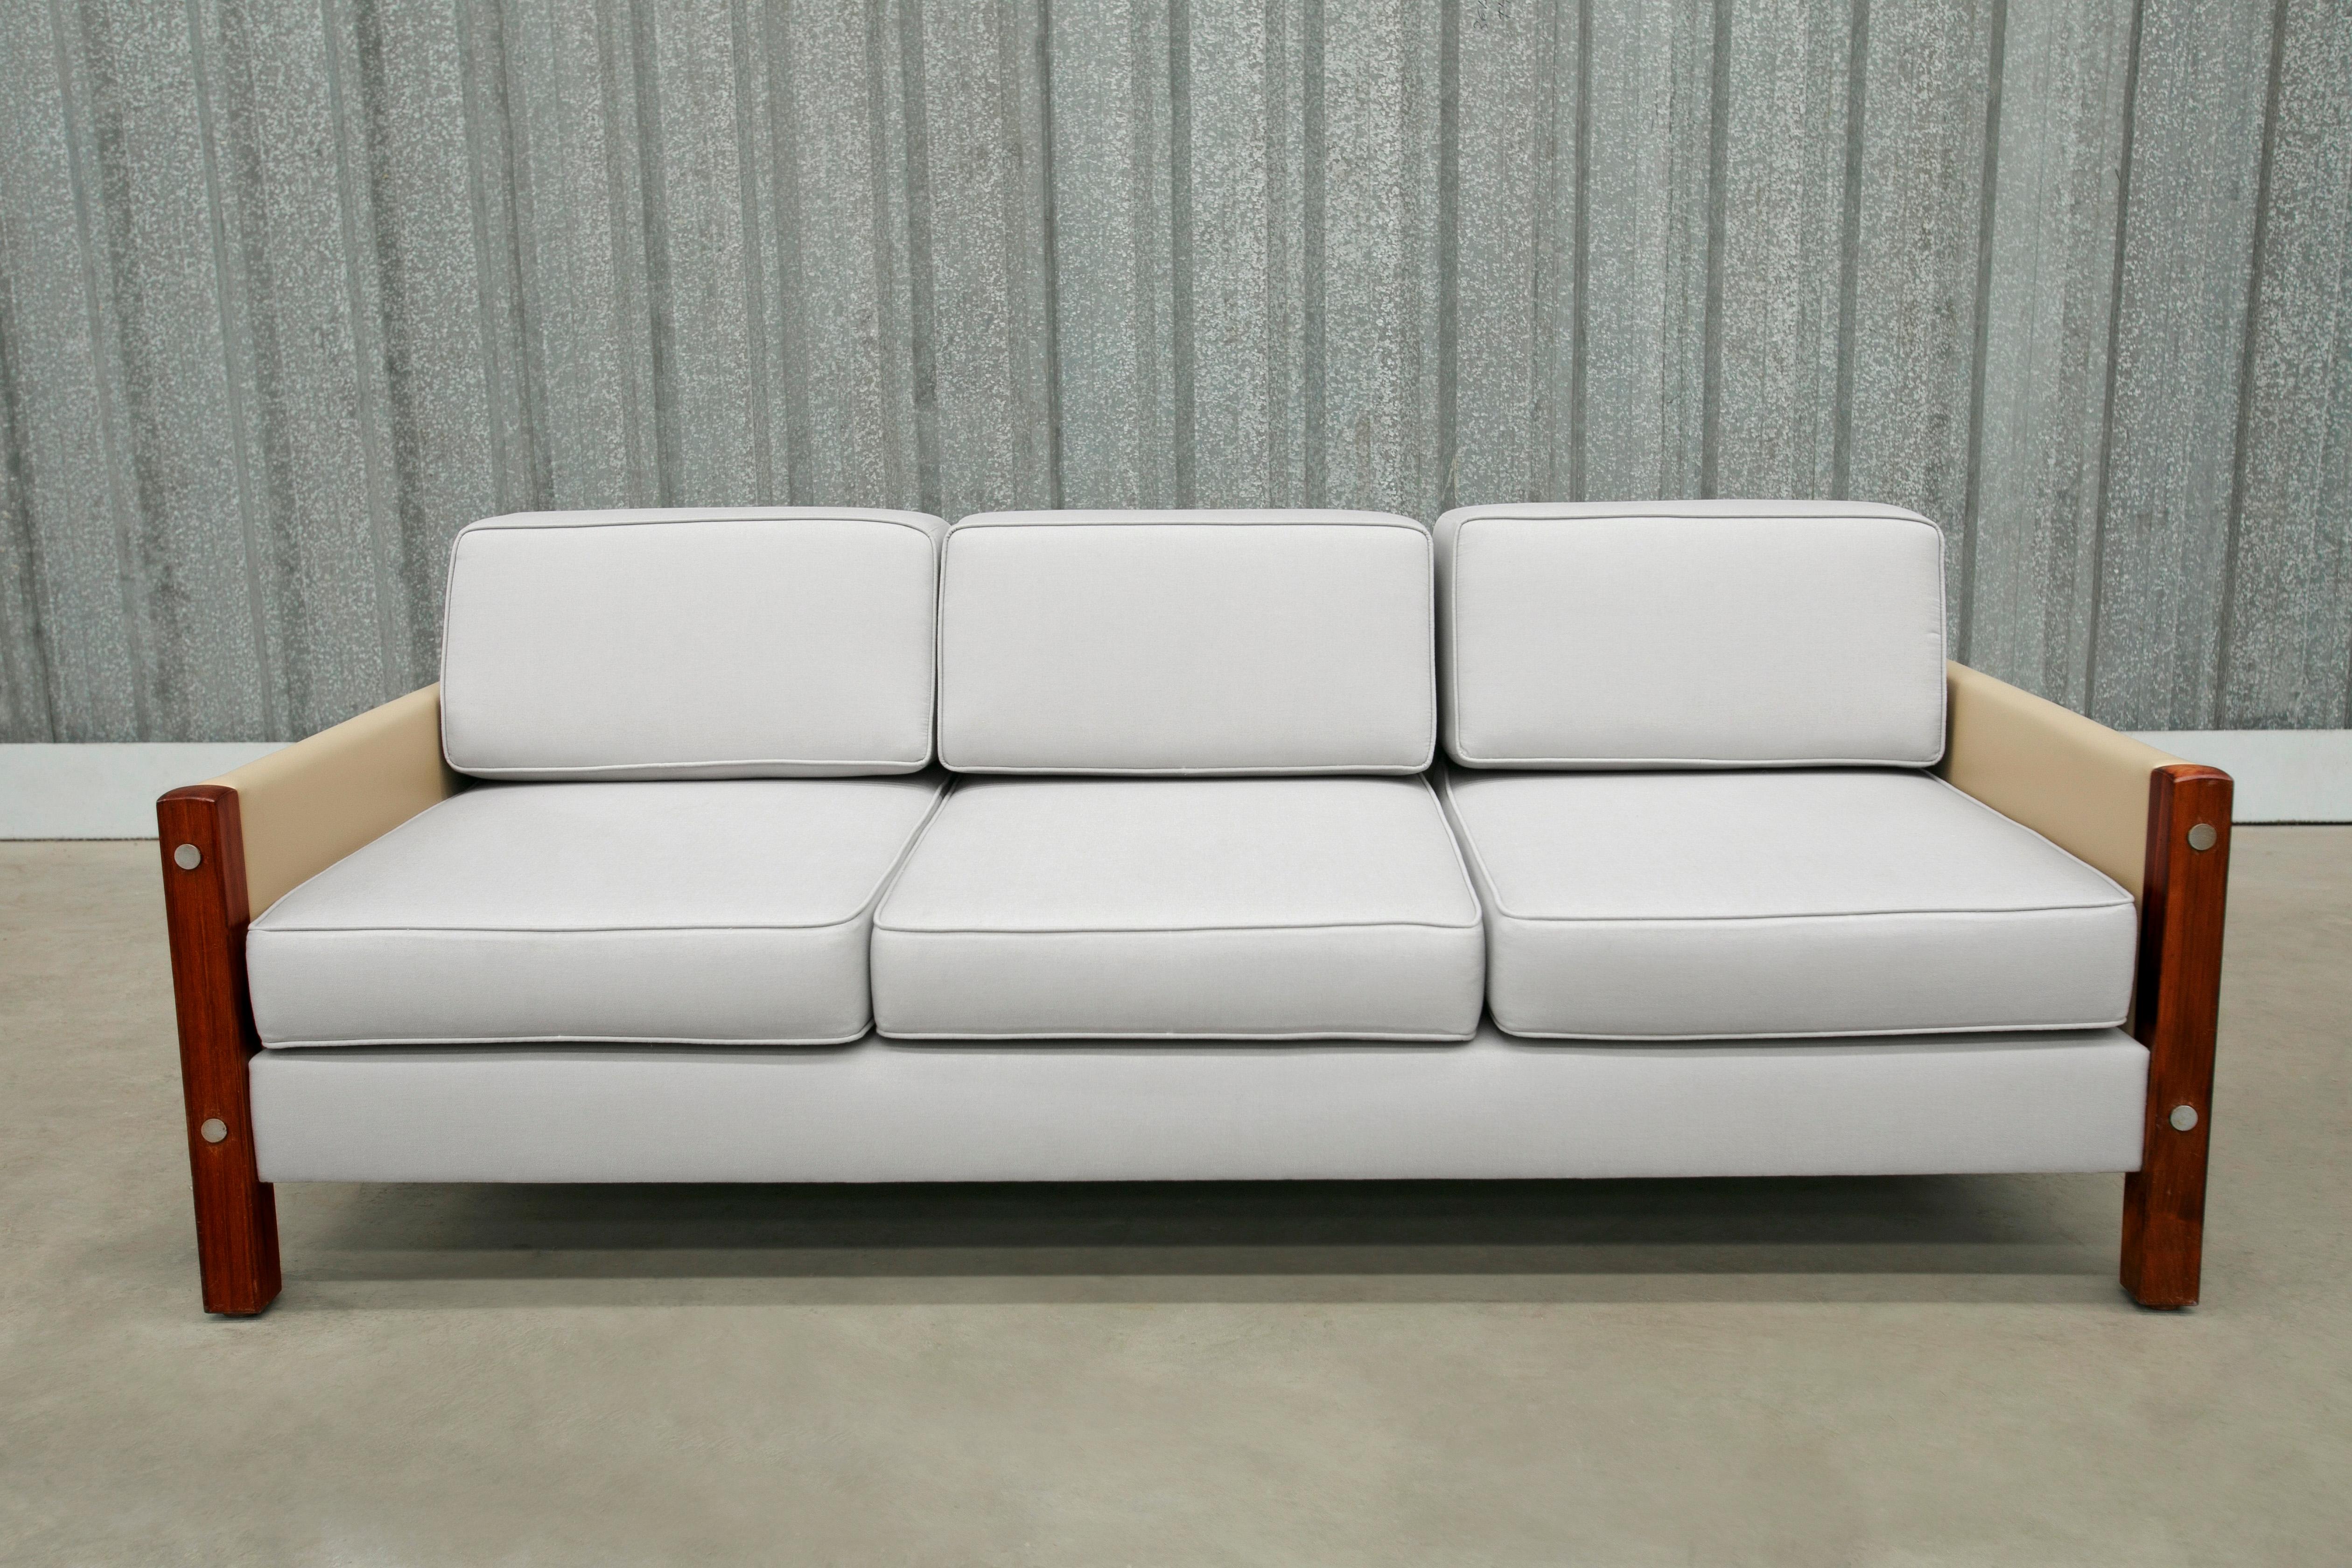 Dieses Mid-Century-Sofa für drei Personen in beigefarbenem Leder, grauem Stoff und Hartholz ist ab sofort erhältlich und absolut umwerfend!

Das Sofa heißt 